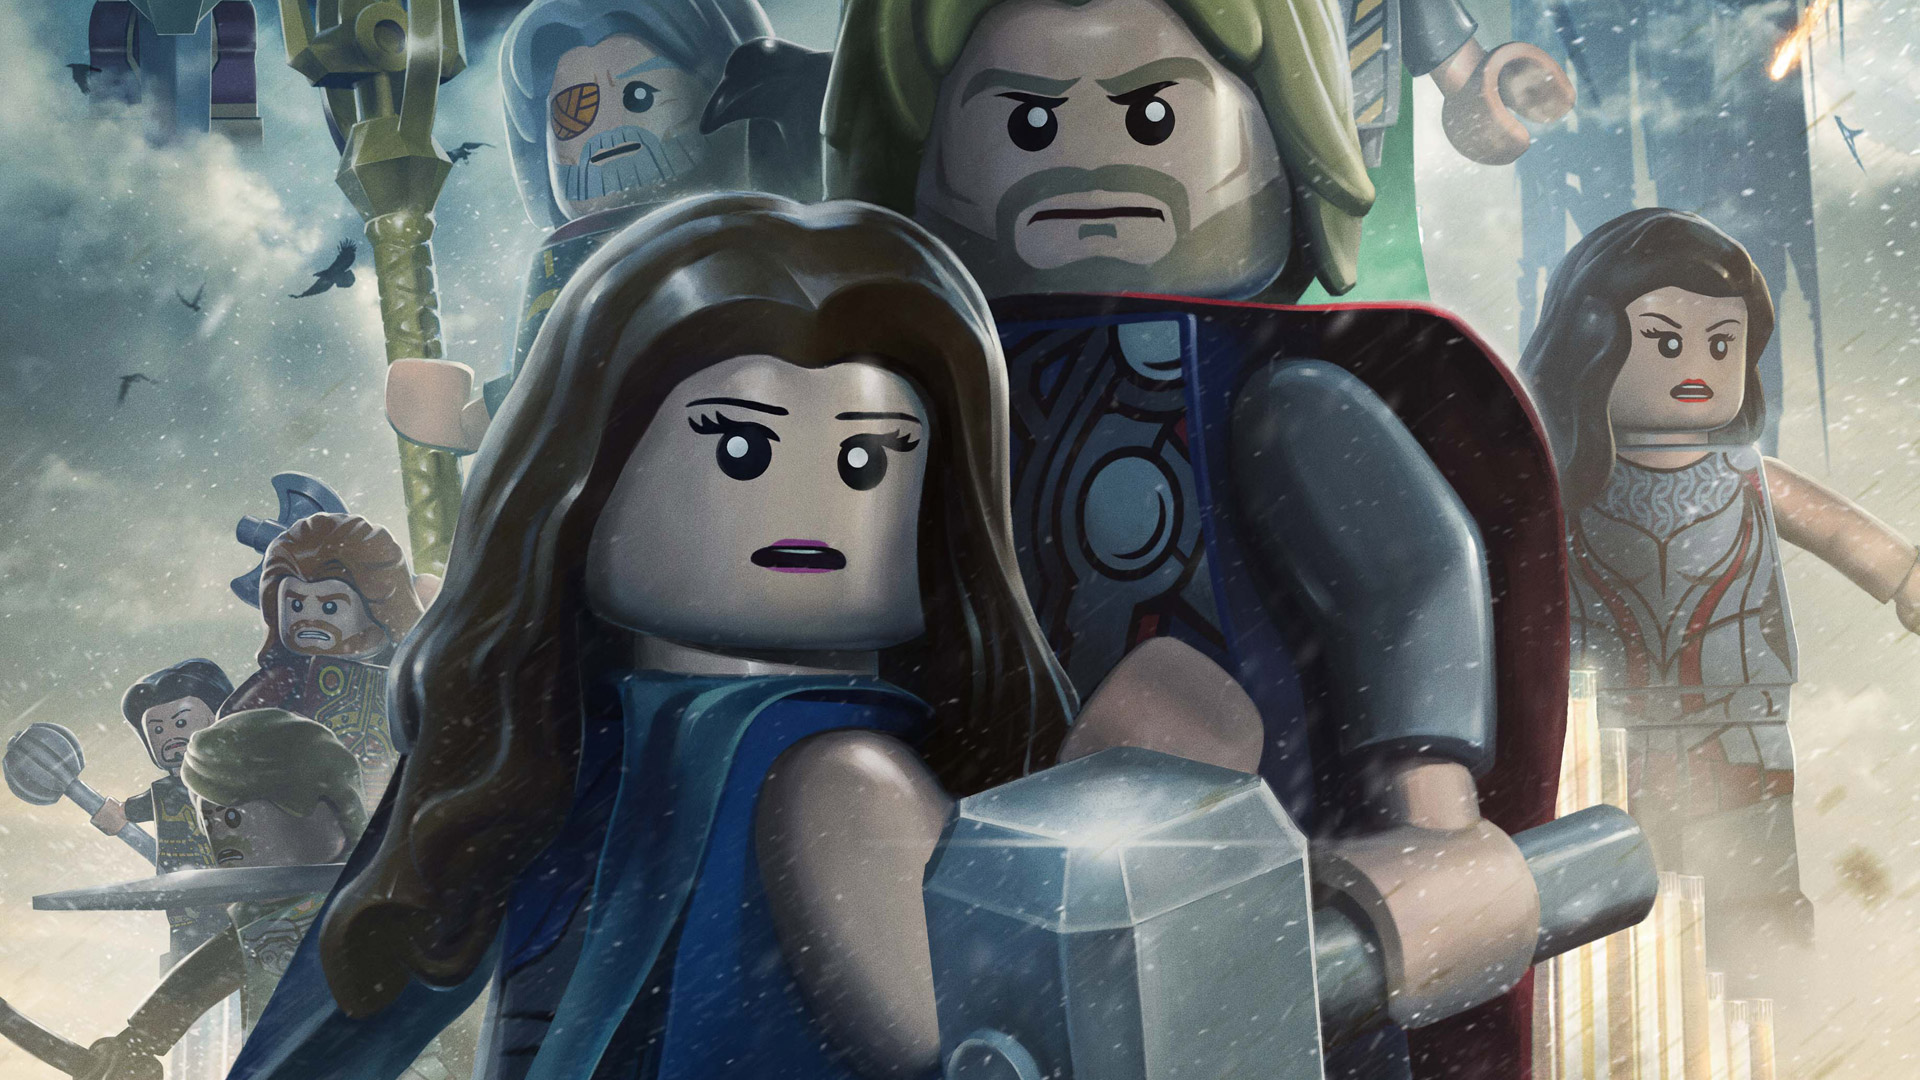 Lego Marvel Super Heroes Wallpaper - Next Upcoming Lego Games - HD Wallpaper 